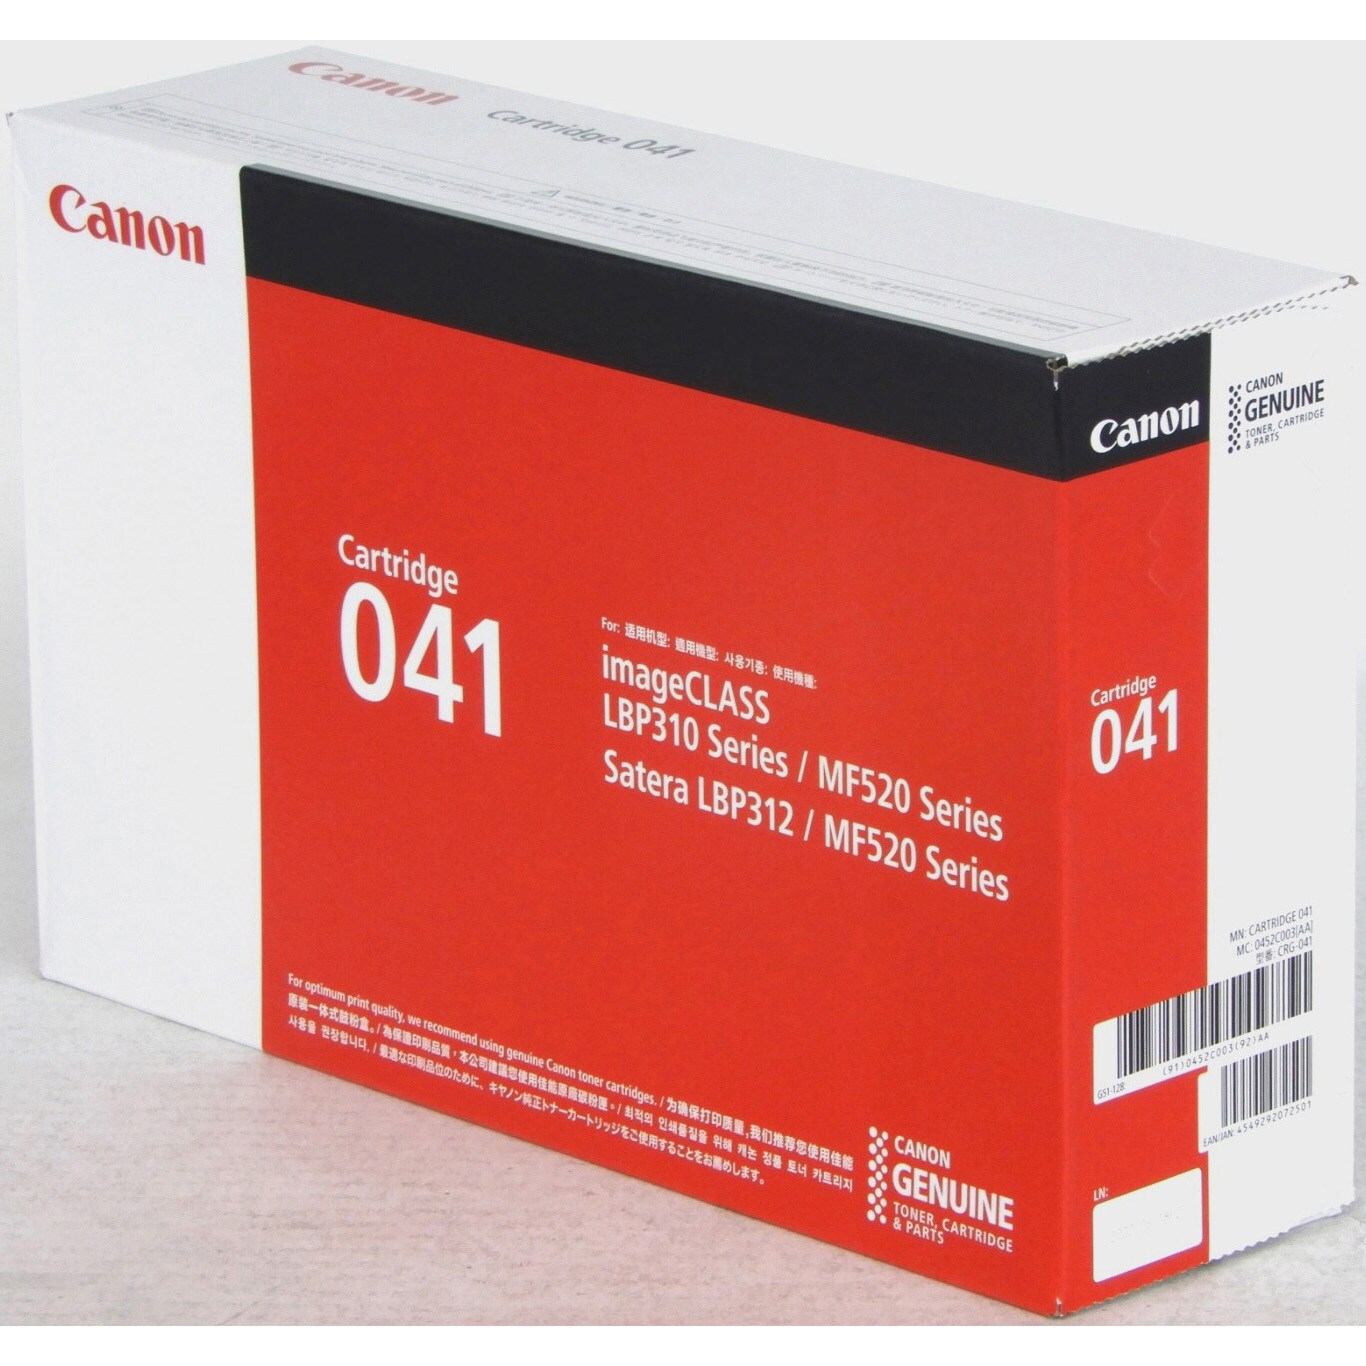 Canon CRG-041 トナーカートリッジ